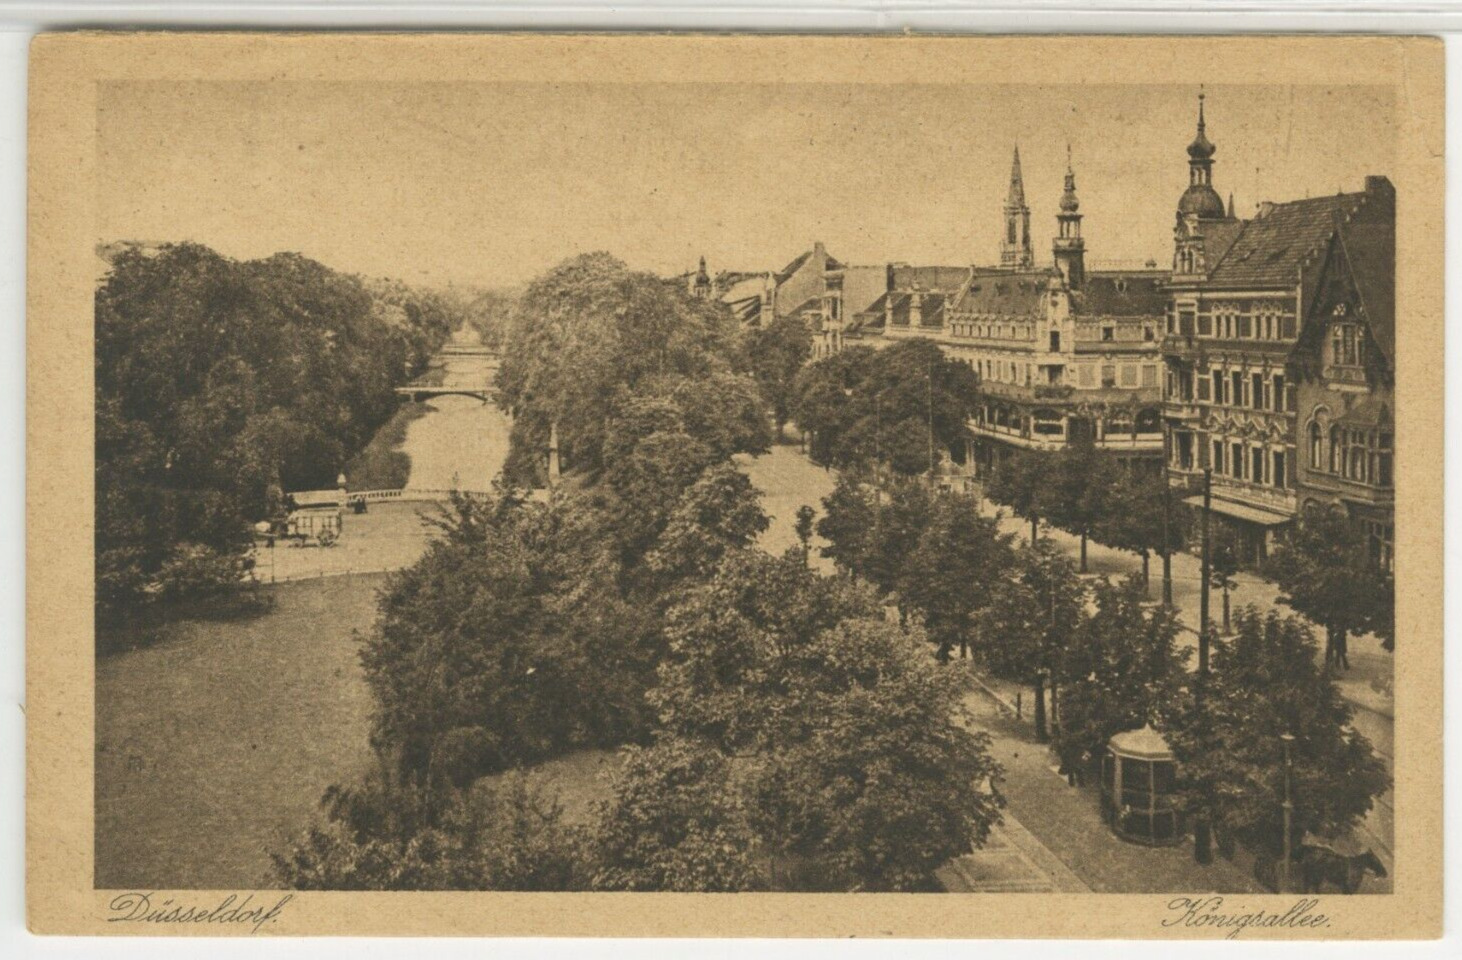 GERMANY Postcard View Of Konigsallee Boulevard - Dusseldorf c1910s vintage 06